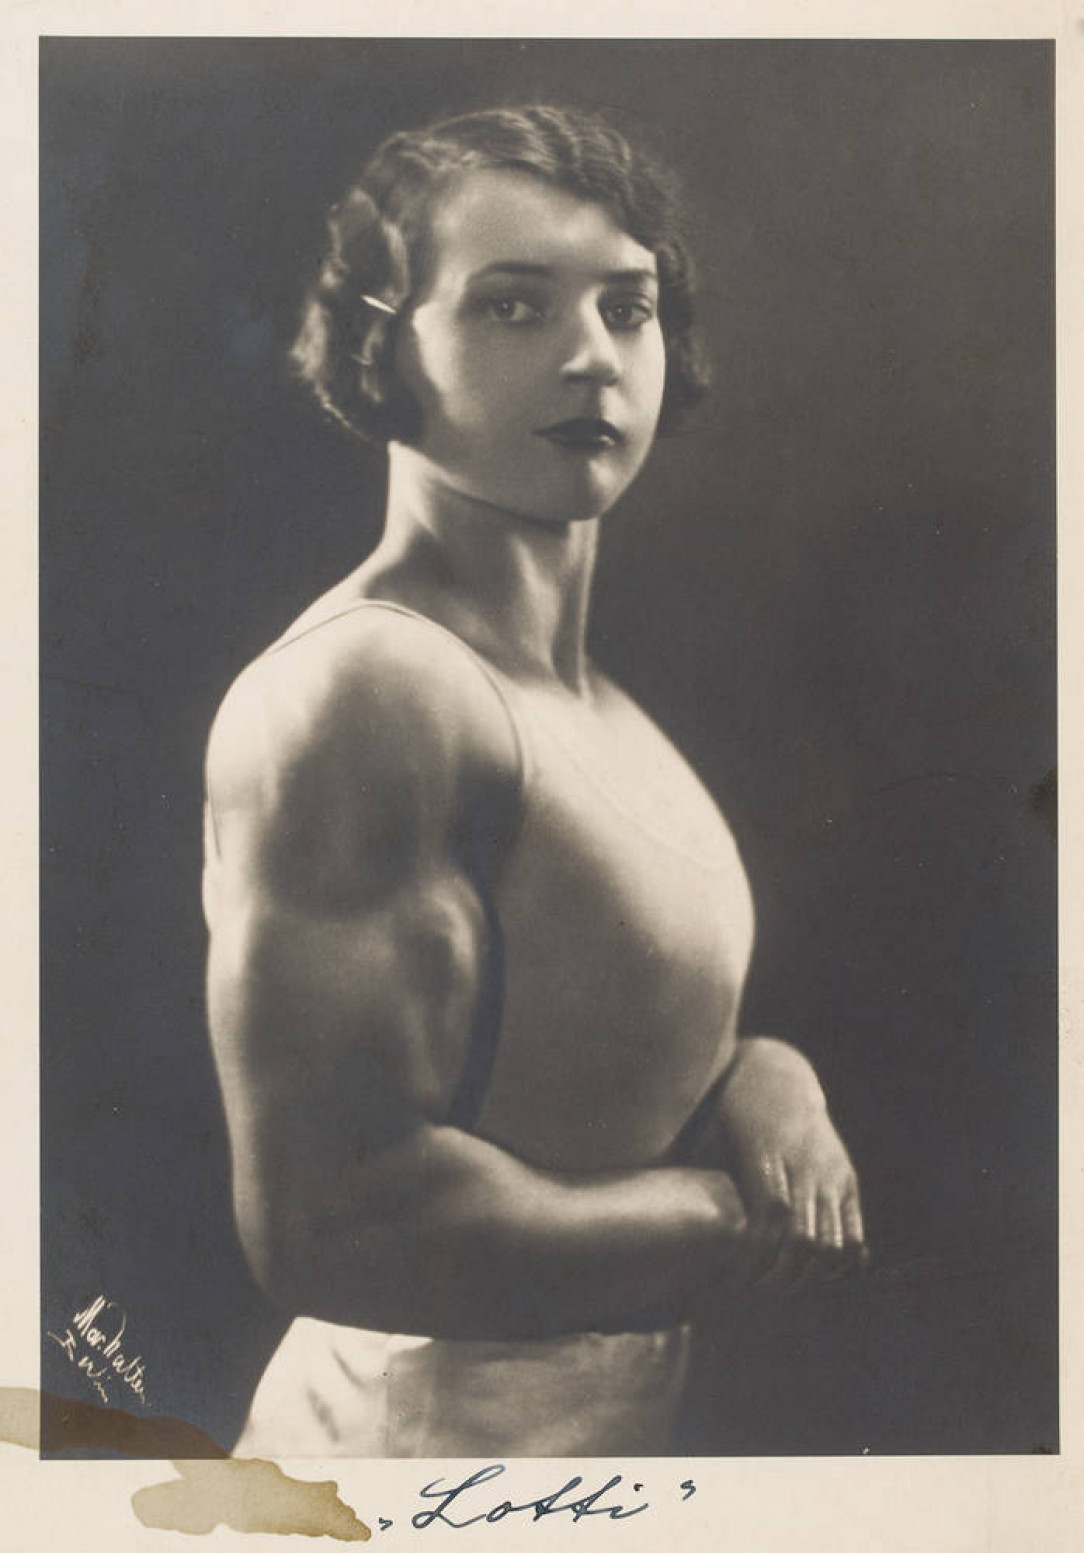 German strongwoman Luisita Leers displays her physique (1925)